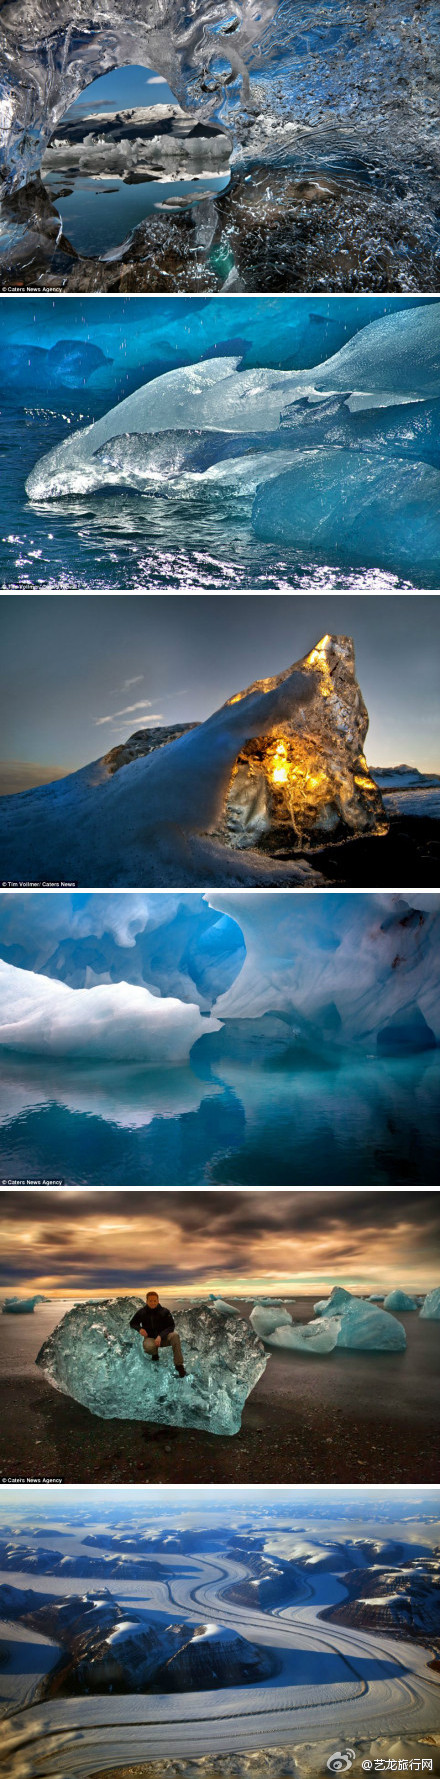 德国两位摄影师在冰岛用相机记录了这个冰雪世界的纯净之美,一幅幅